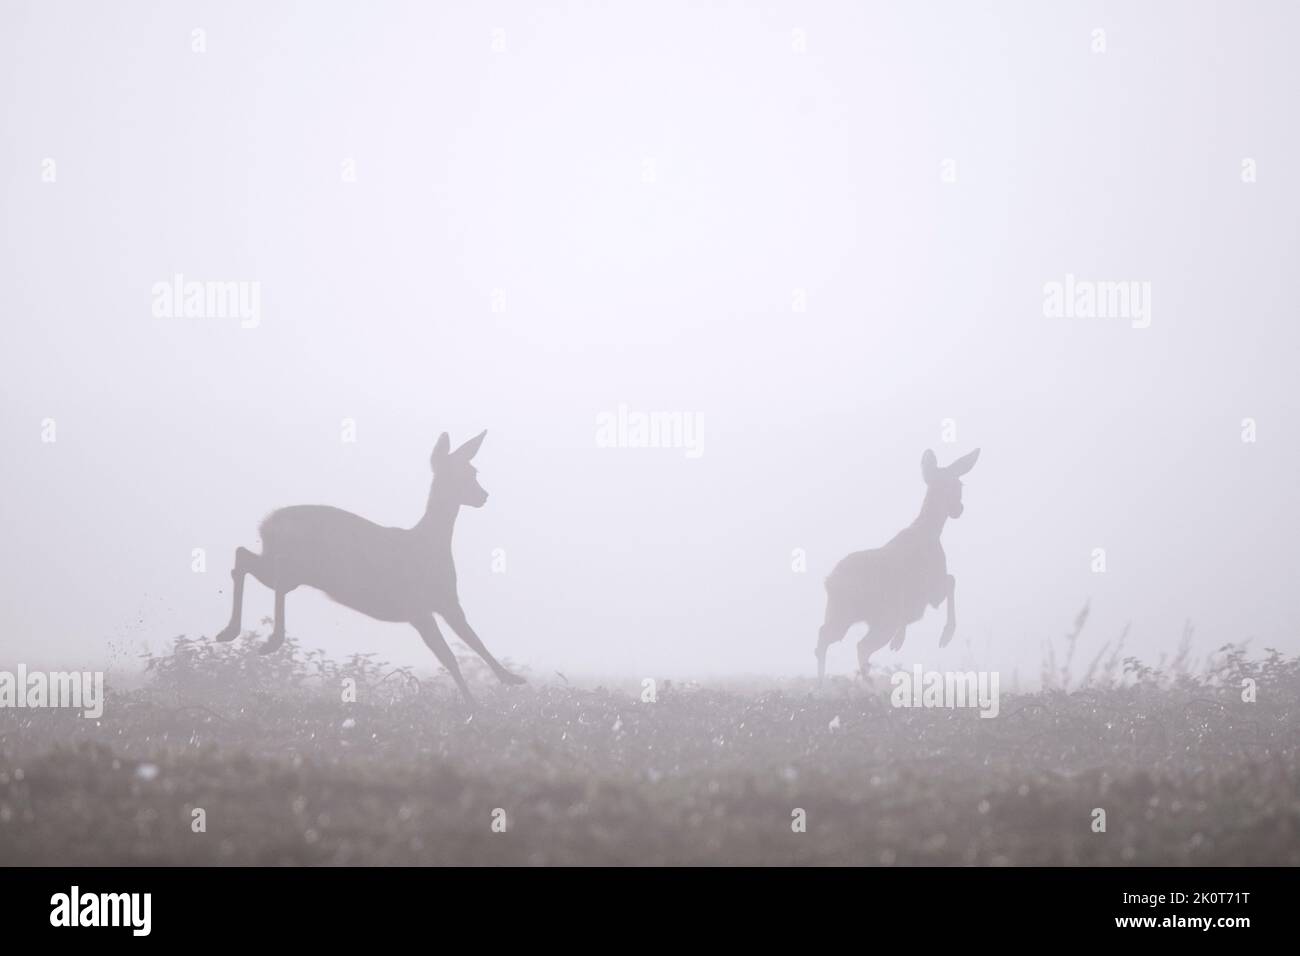 Corzo europeo (Capreolus capreolus) hembra / ciervo con joven huyendo en pradera / pradera cubierta de densa niebla a finales de verano / principios de otoño Foto de stock